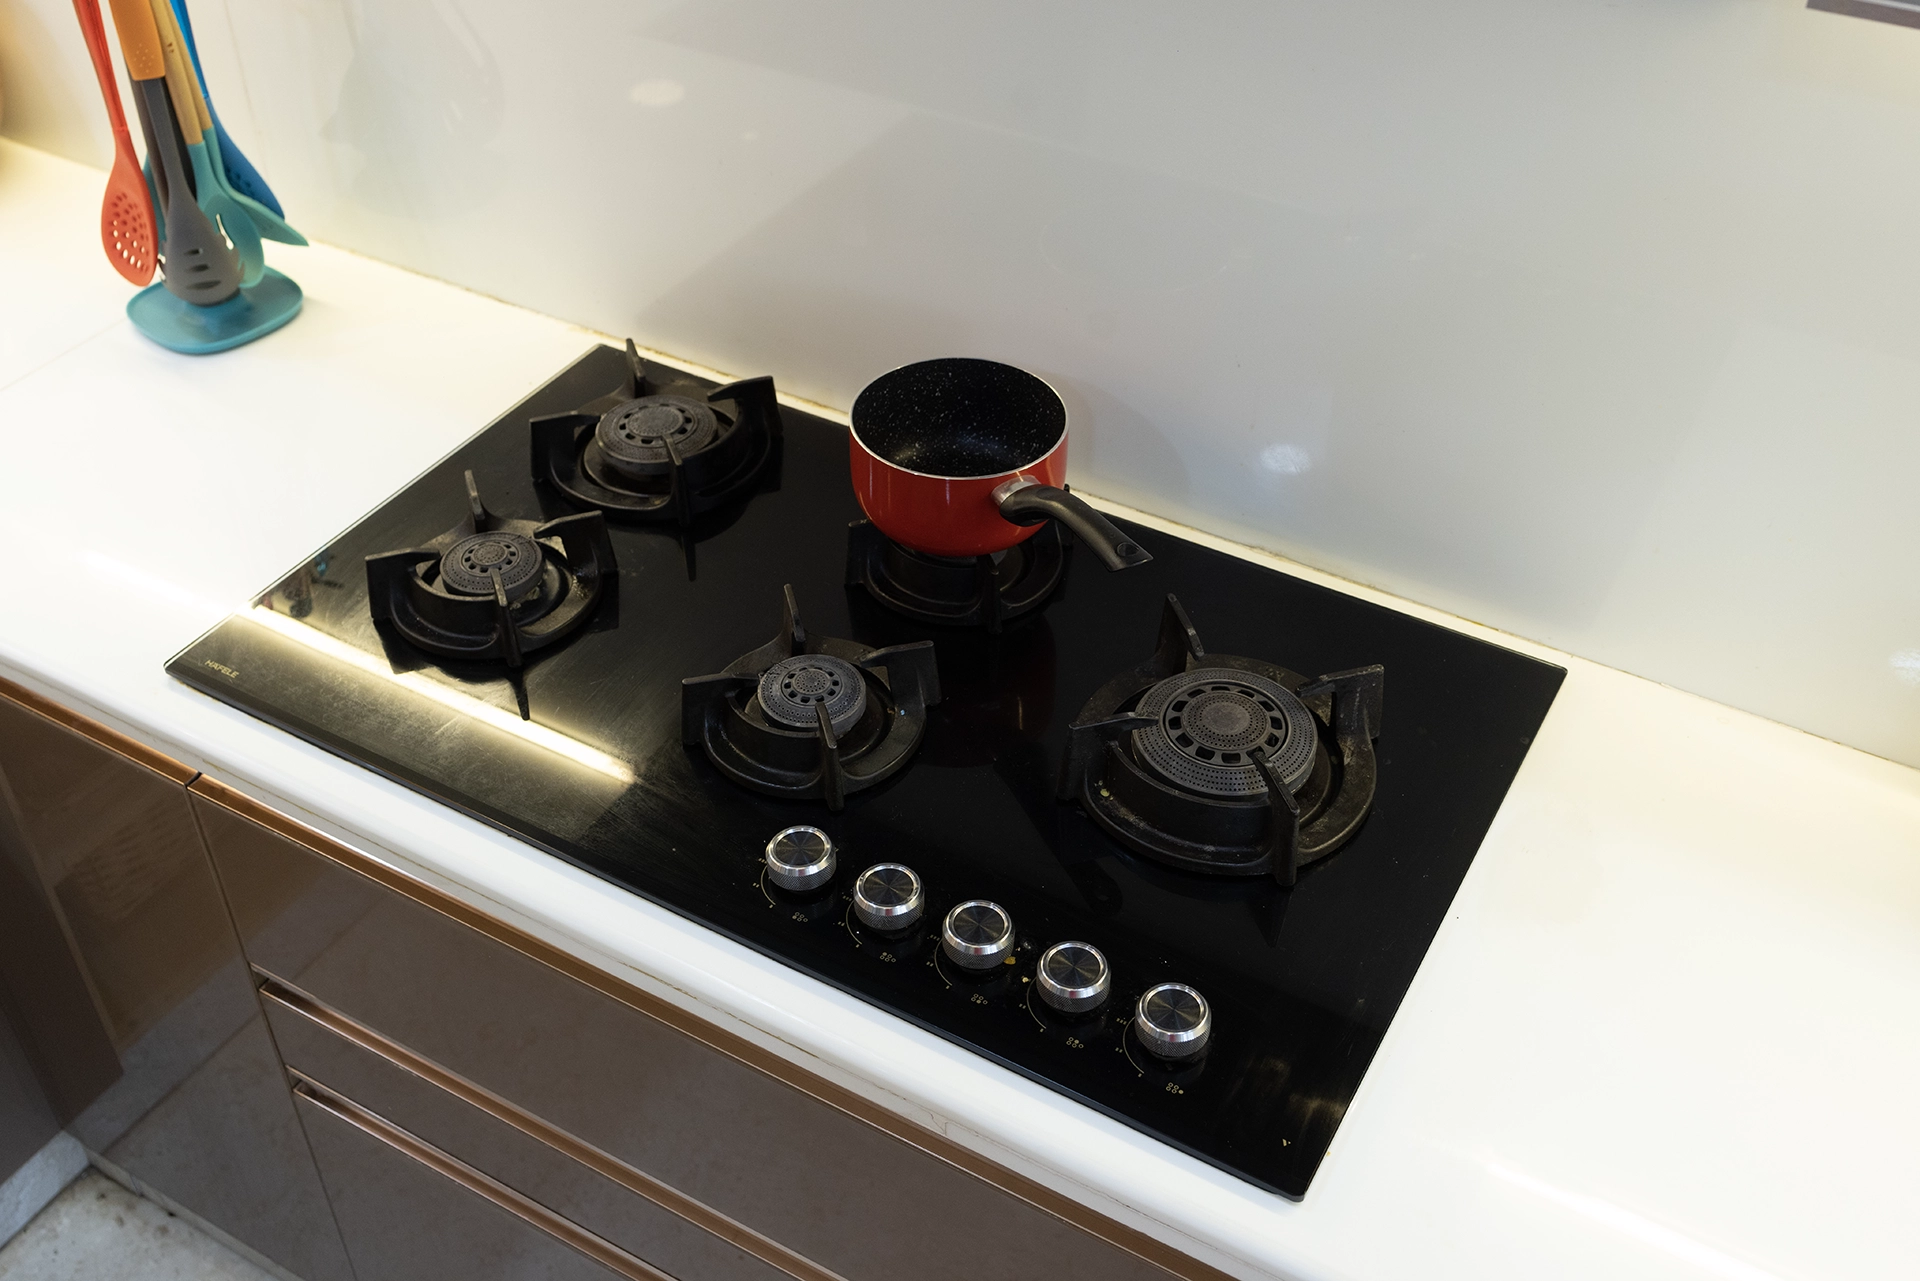 Modular kitchen inbuilt appliance